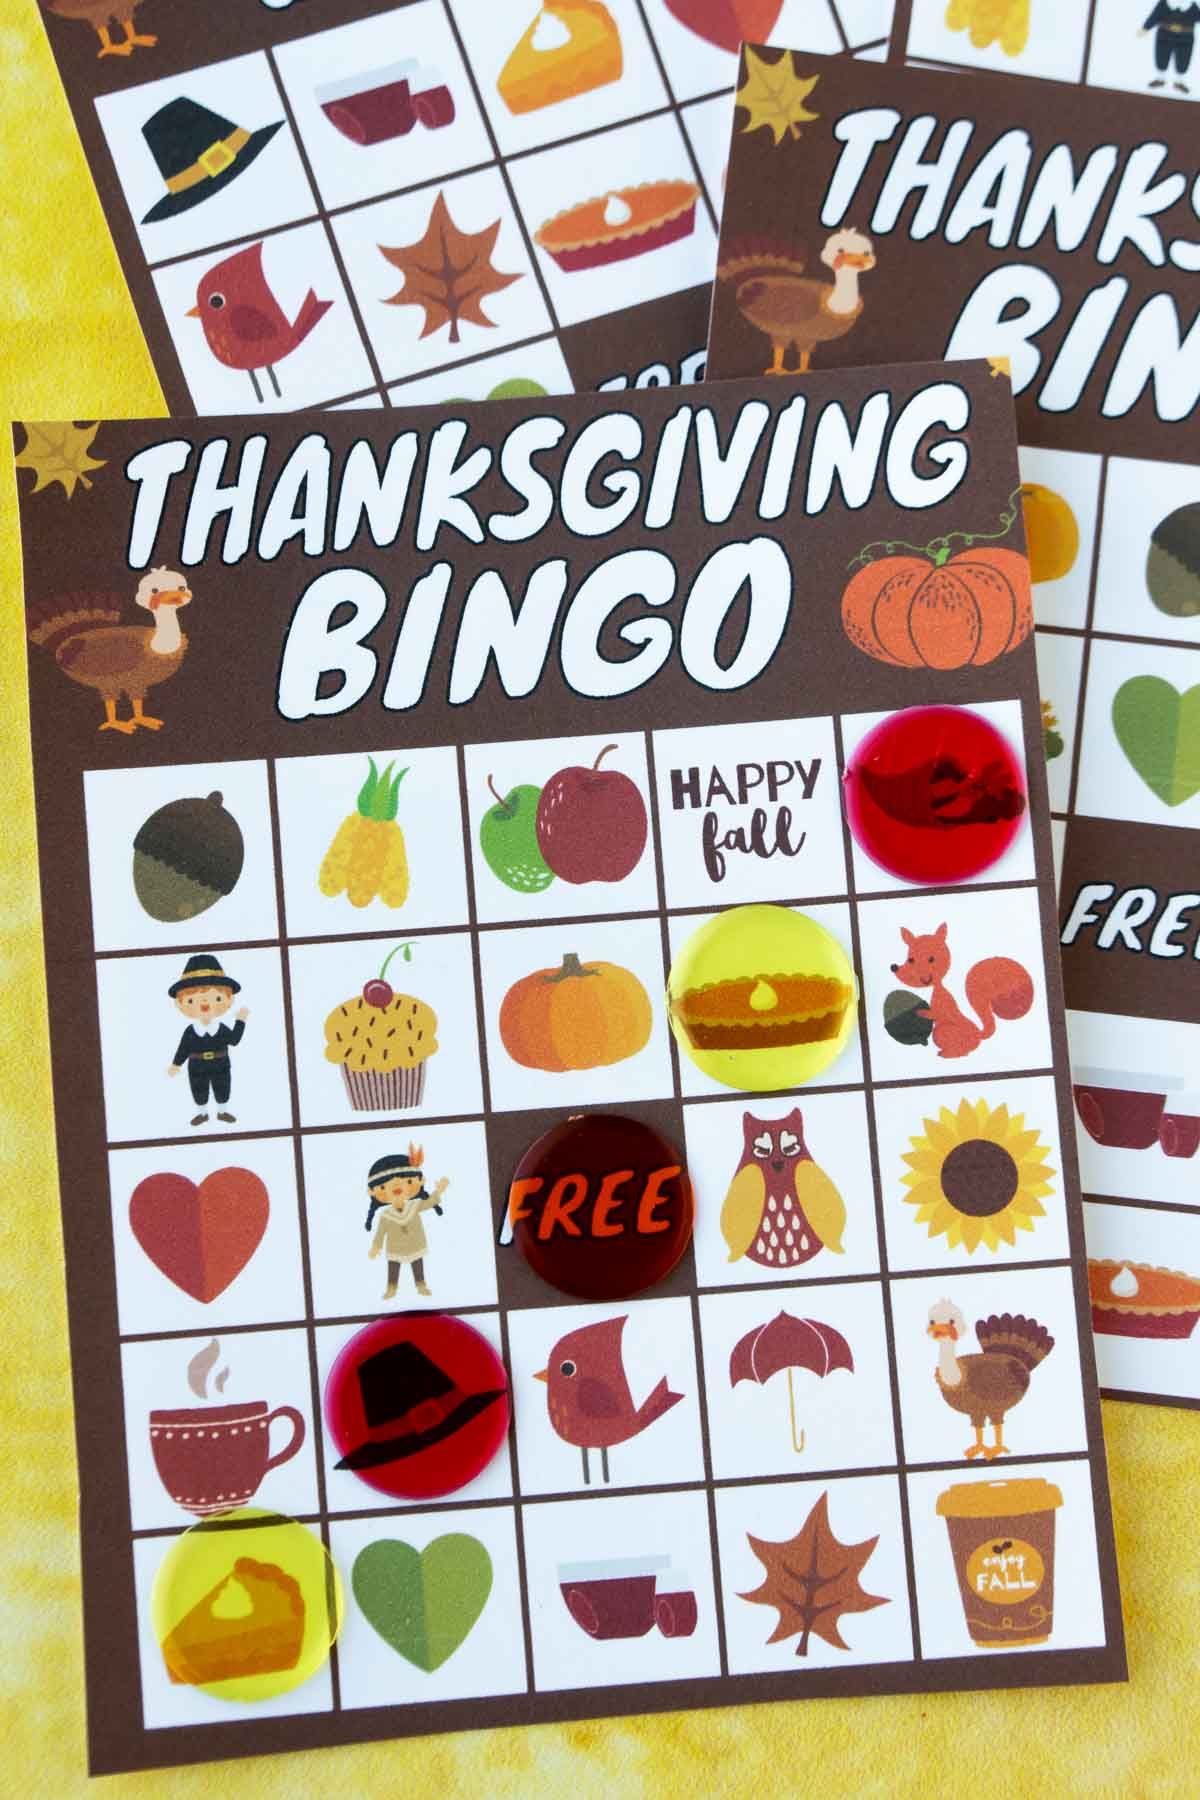 Zahvalna bingo karta z bingo markerji